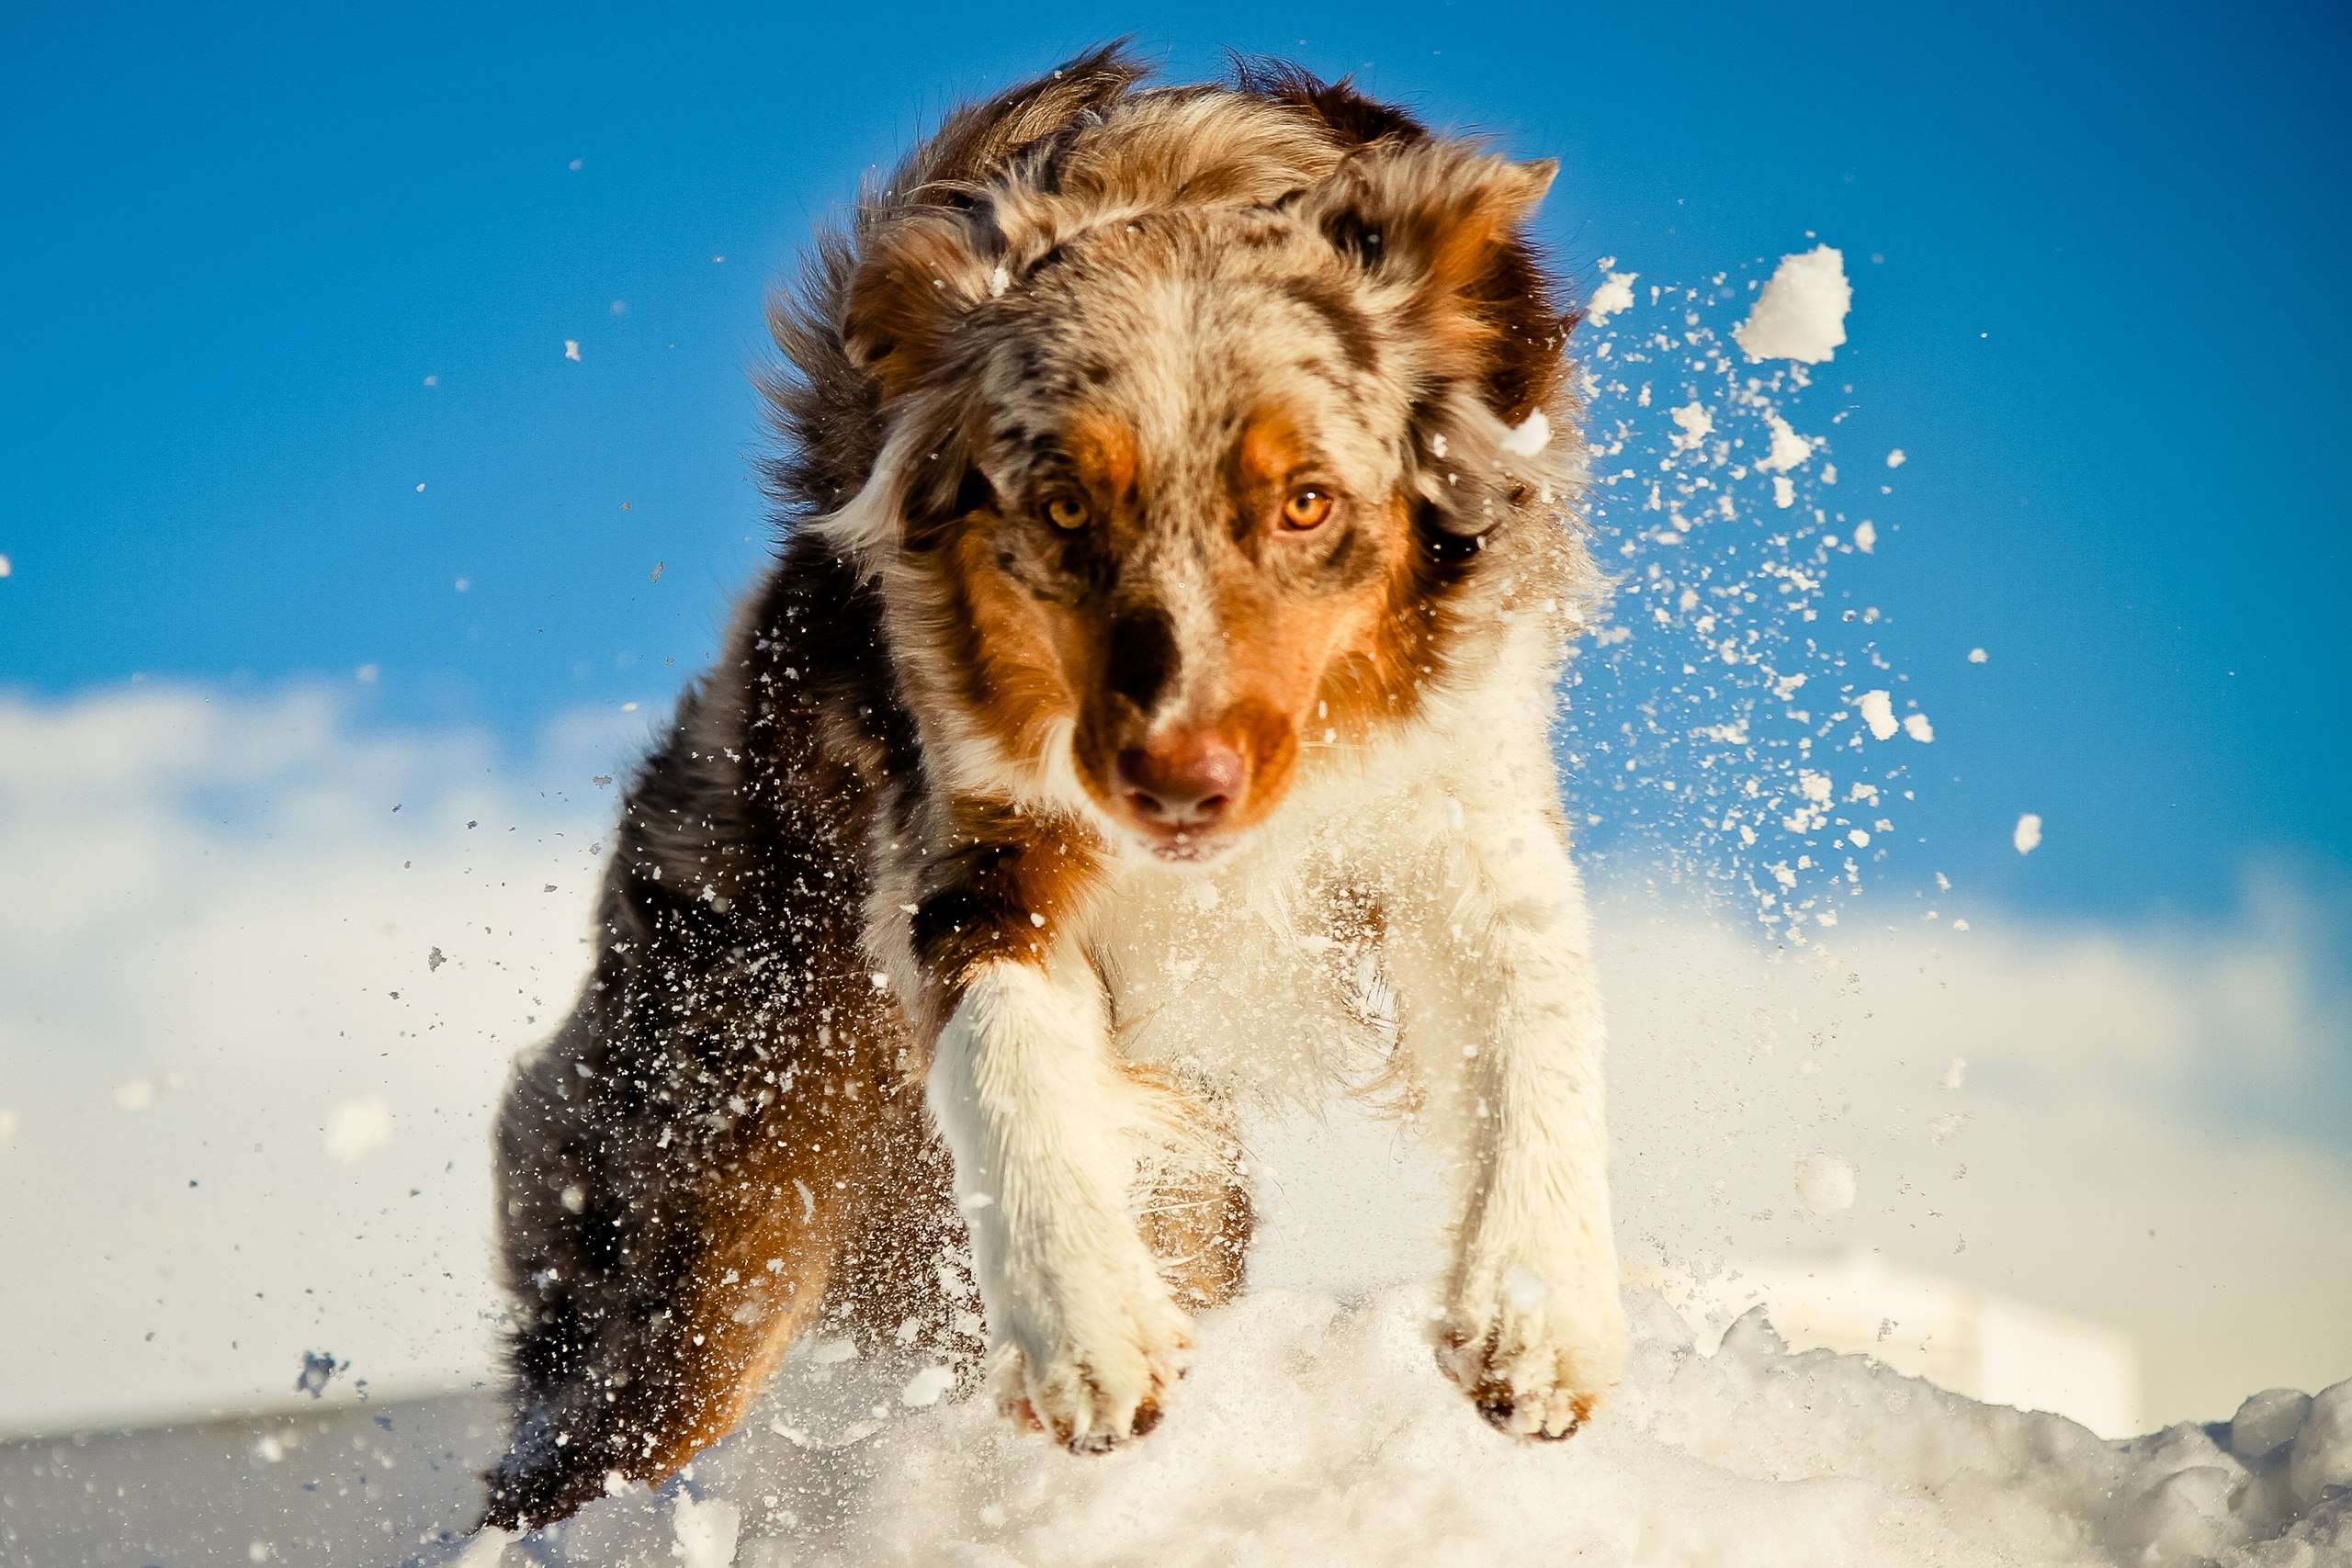 Австралийская овчарка бежит по снегу, фото фотография картинка обои